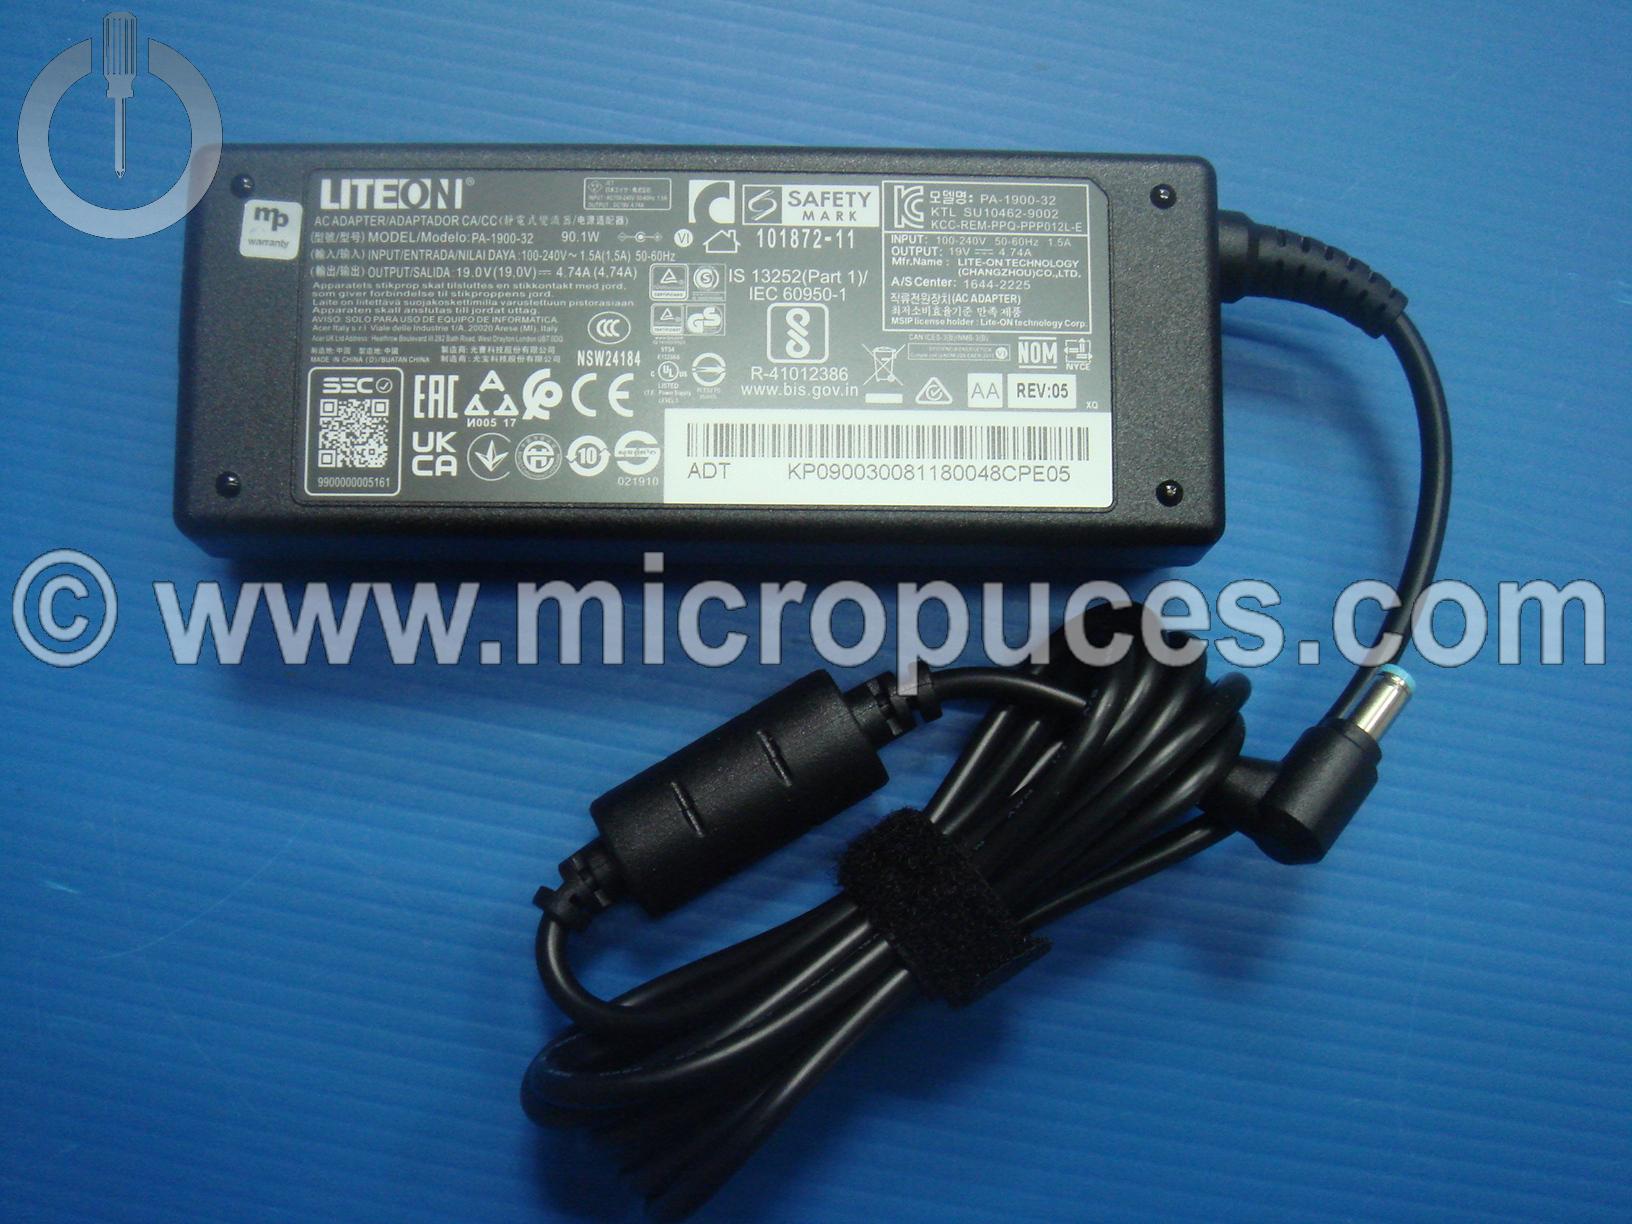 Adaptateur secteur - Chargeur pour PC Portable - 19V - 4.74A / 90W